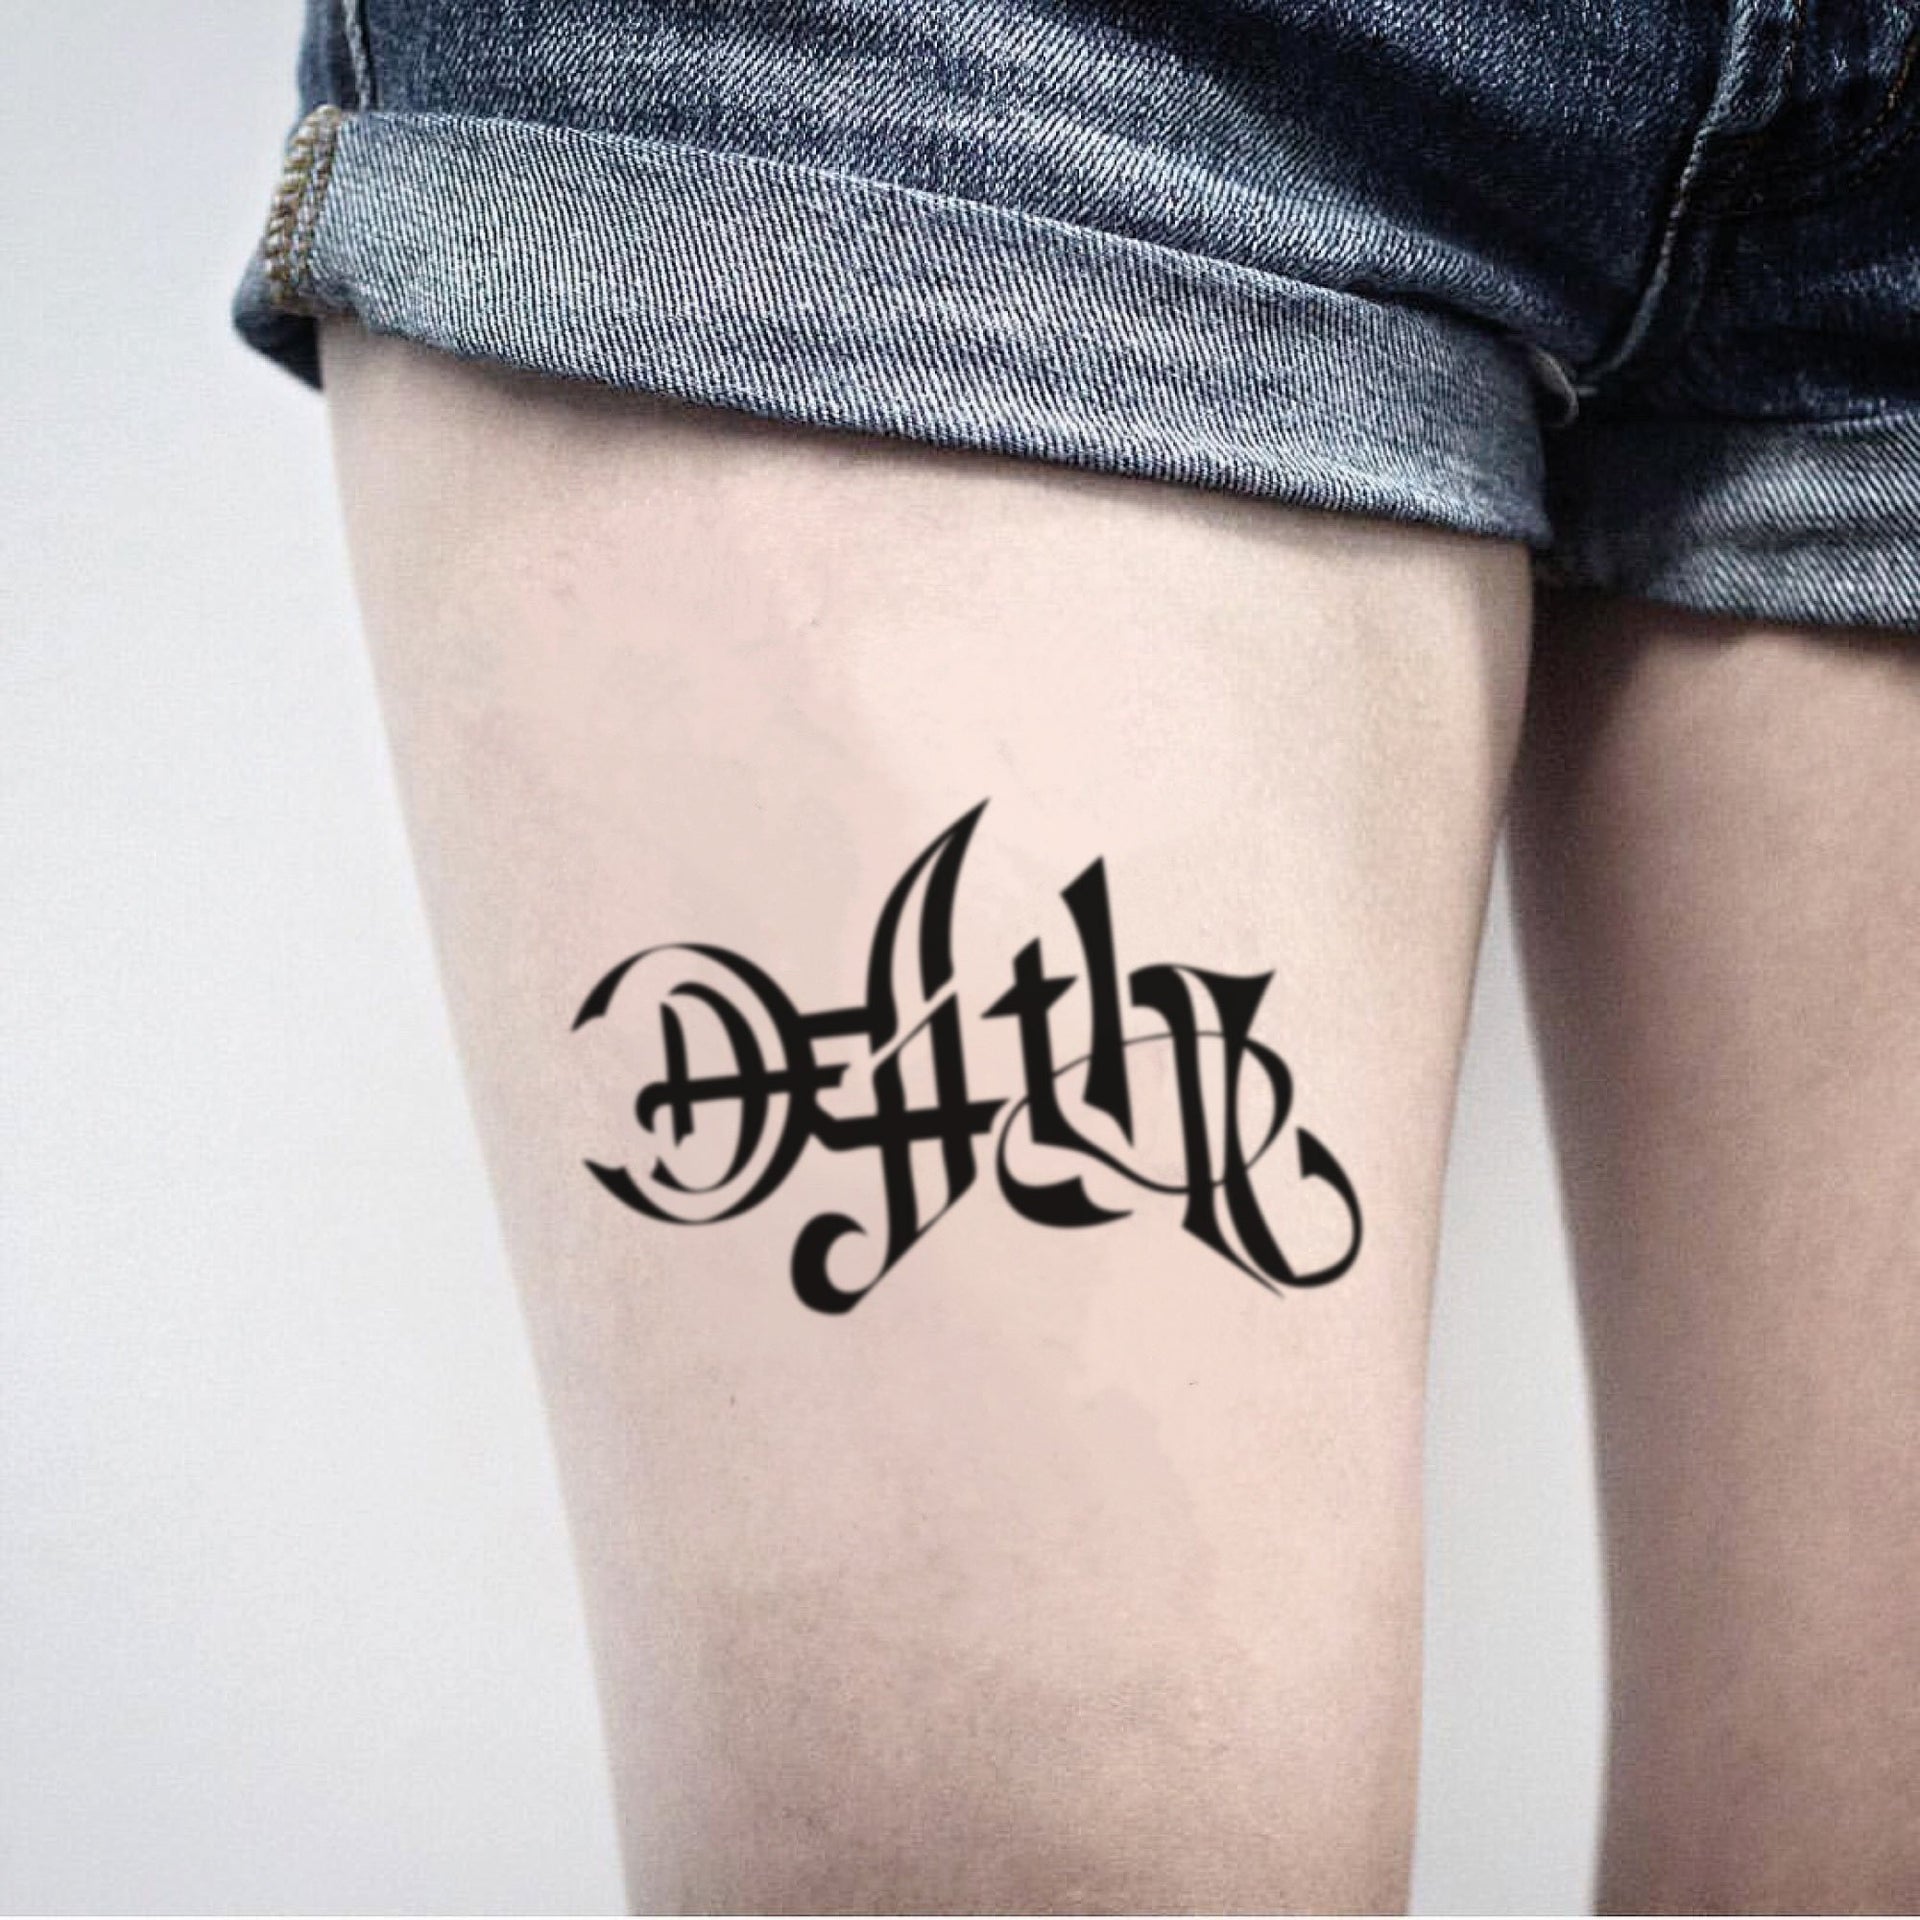 life vs death tattoo